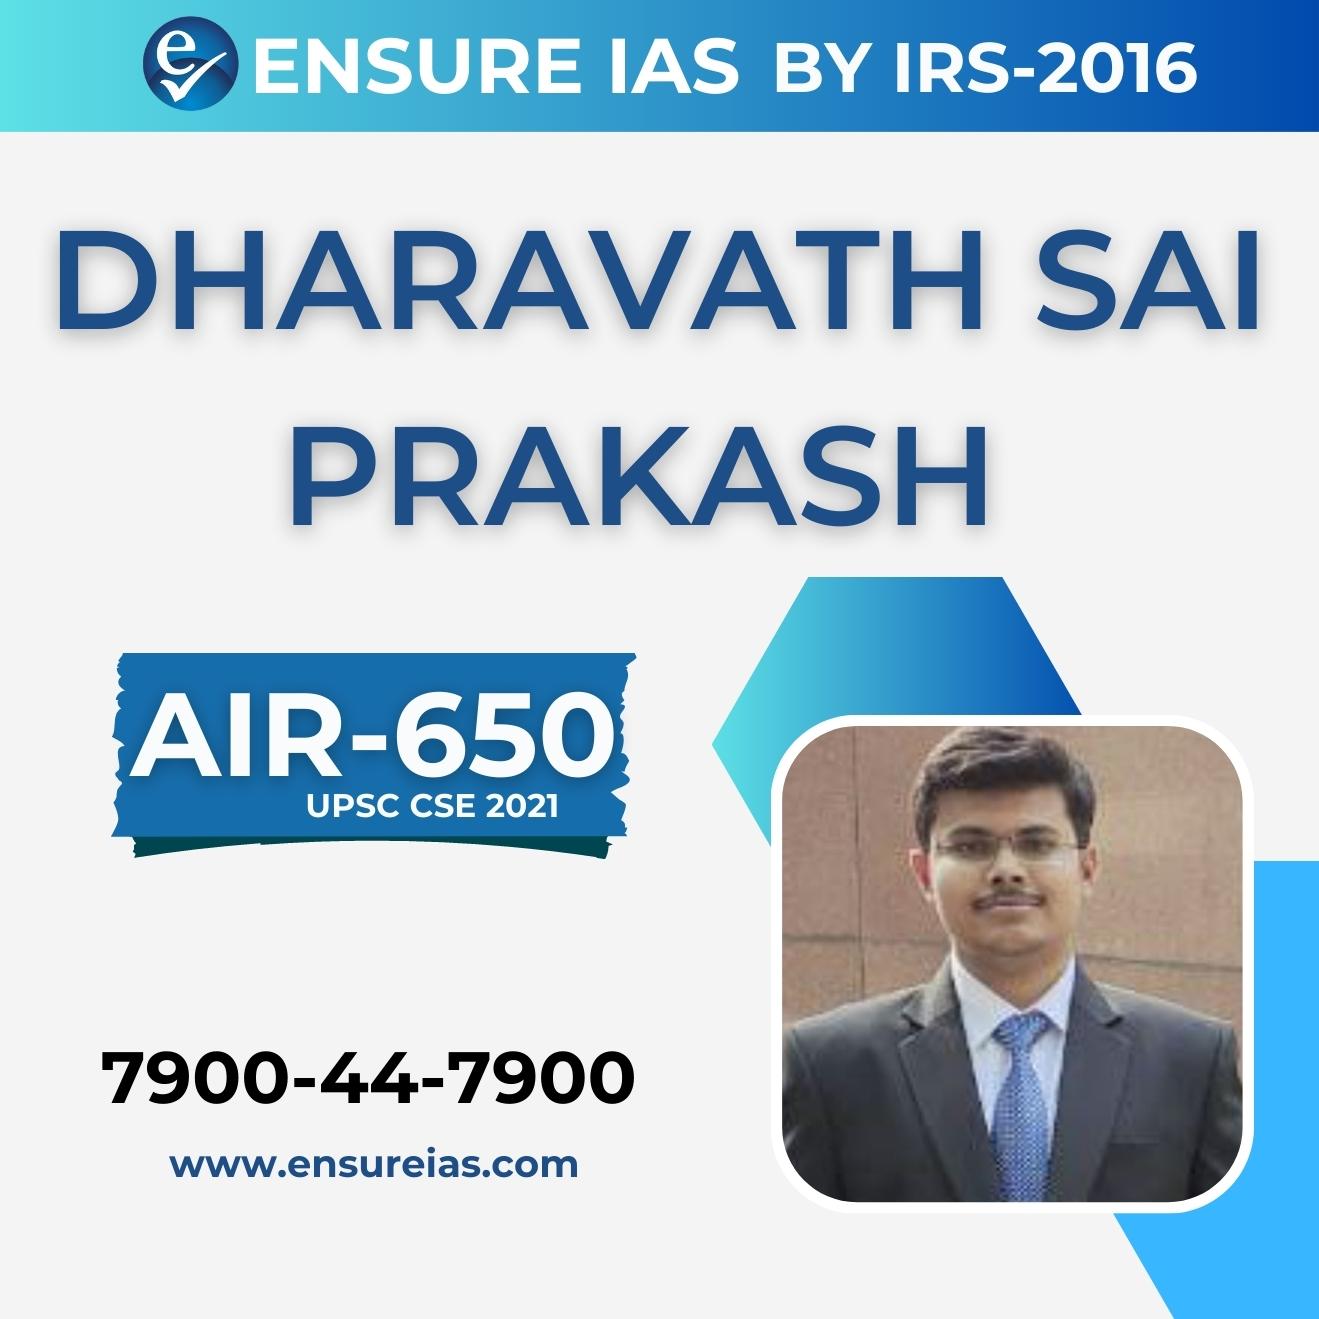 img-DHARAVATH SAI PRAKASH - AIR 650